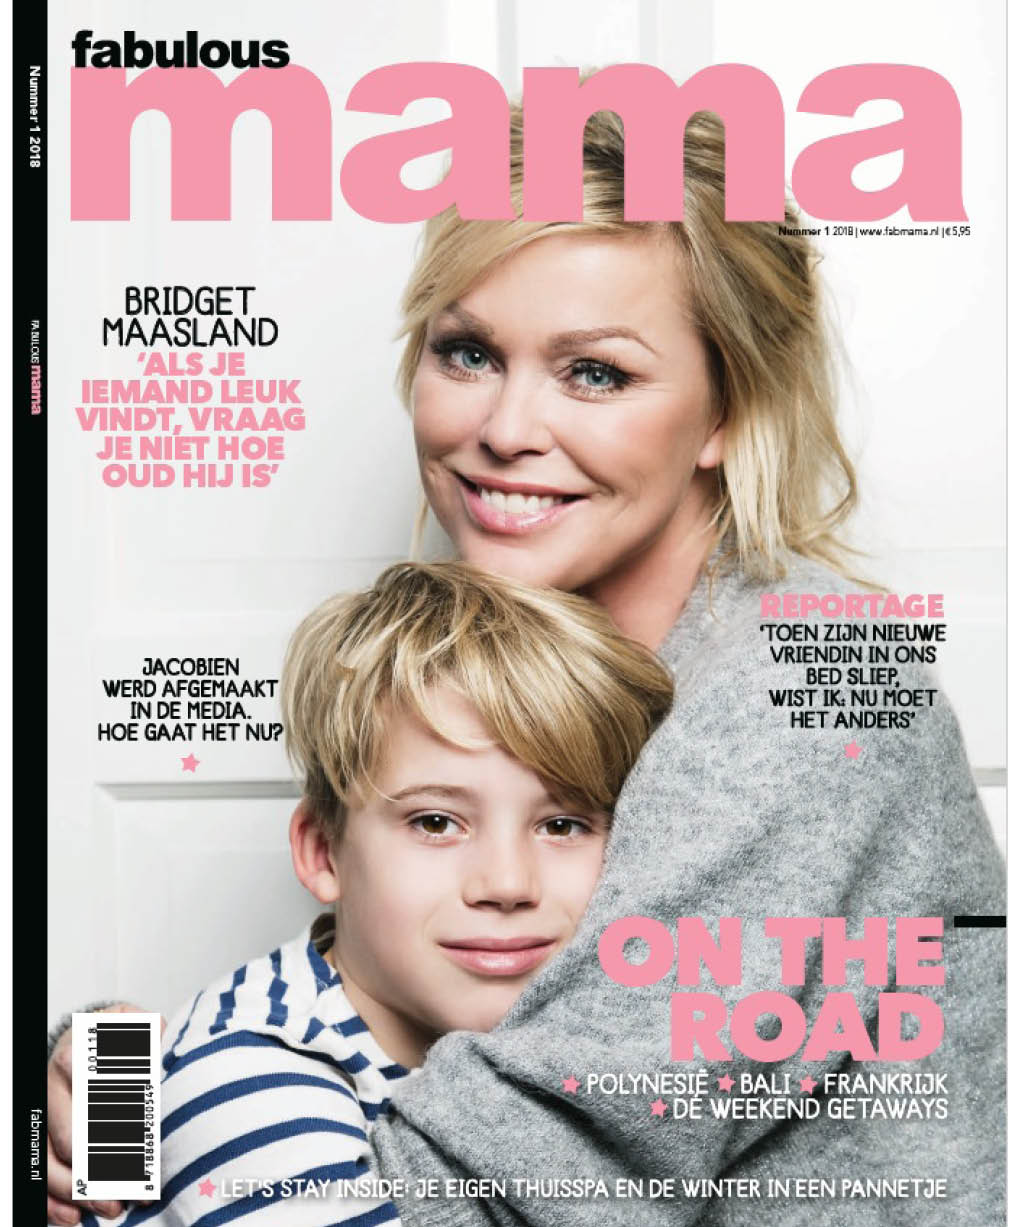 Tijdschrift; de leukste mama magazines oa over kinderen opvoeden - Mamaliefde